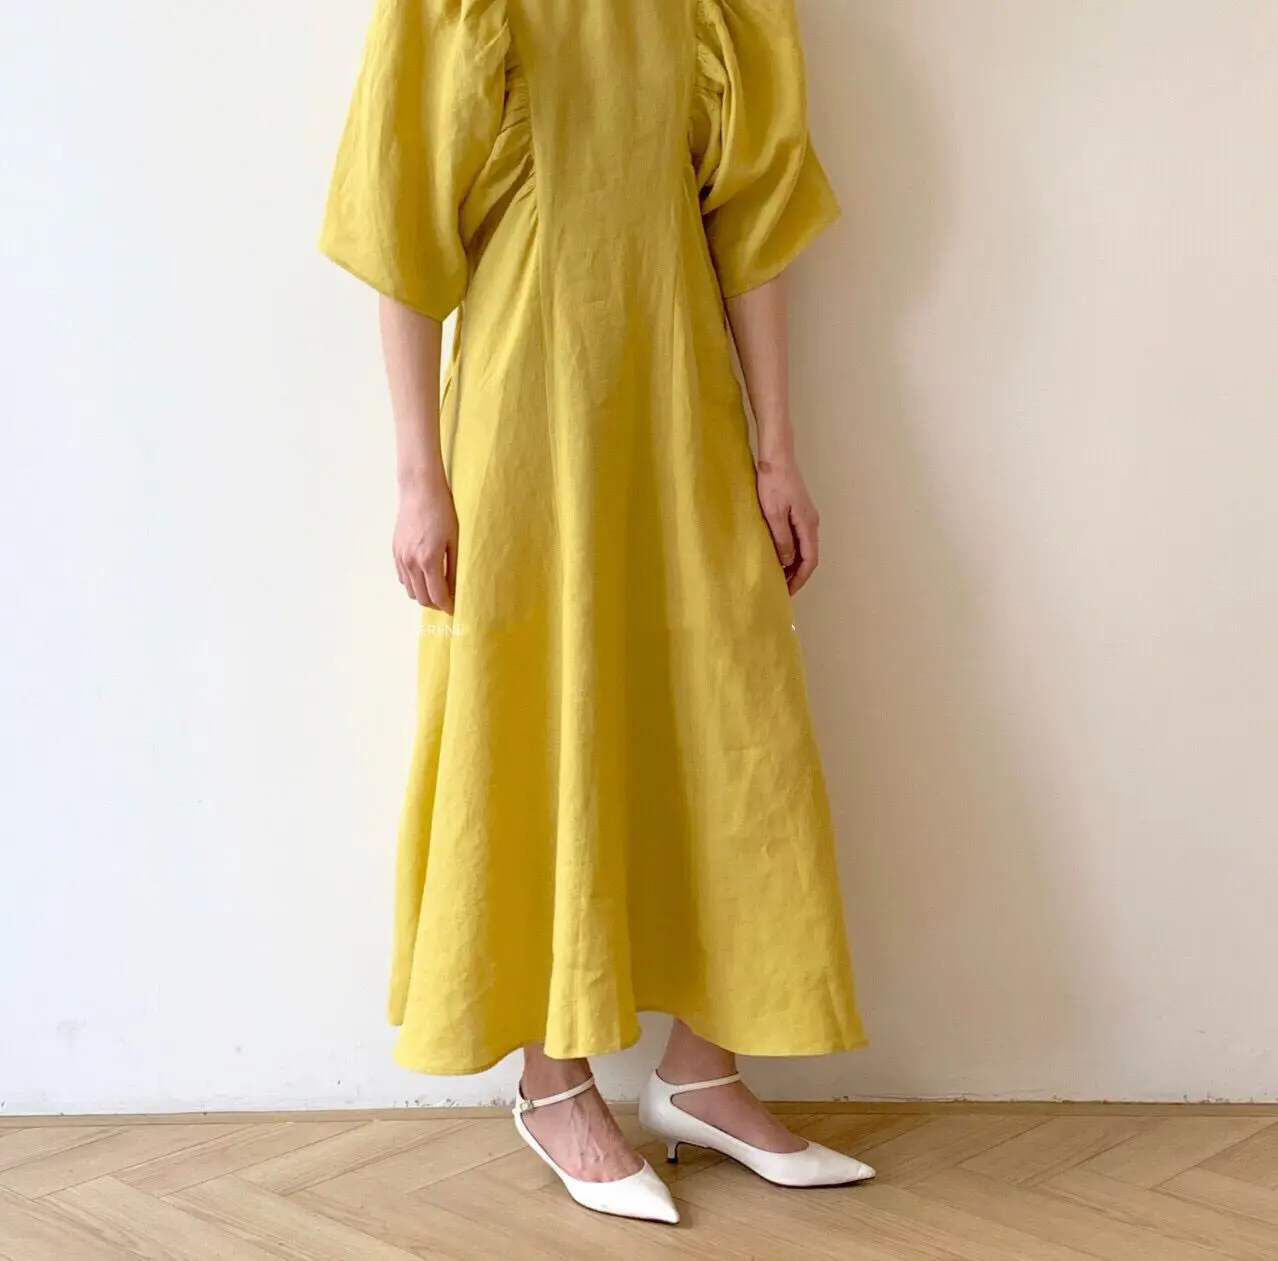 RUGOD новое поступление женское одноцветное платье с o-образным вырезом свободное тонкое плиссированное платье с двух сторон винтажное темпераментное элегантное платье